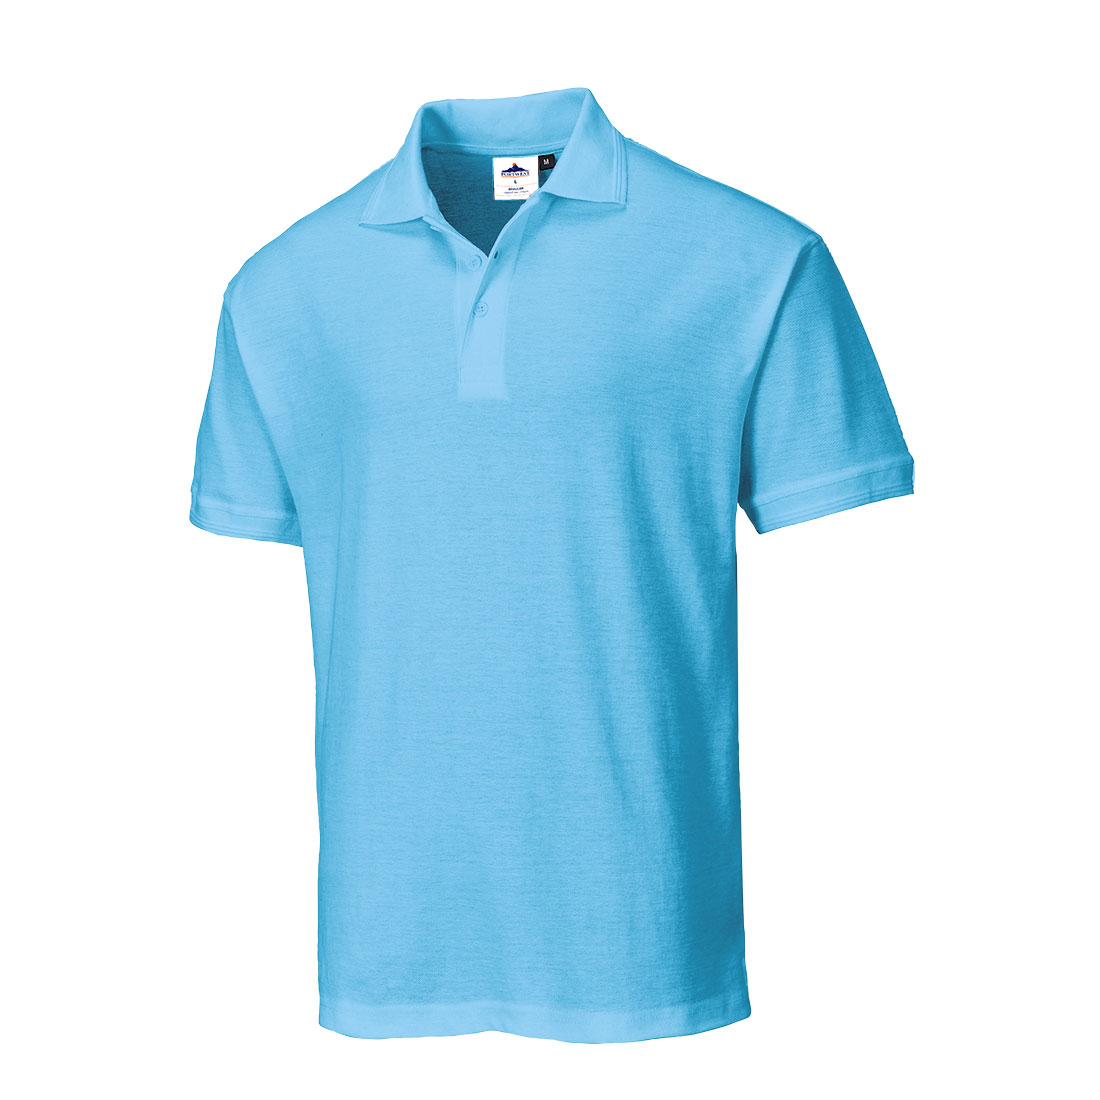 Portwest B210 Sky Blue Polo Shirt